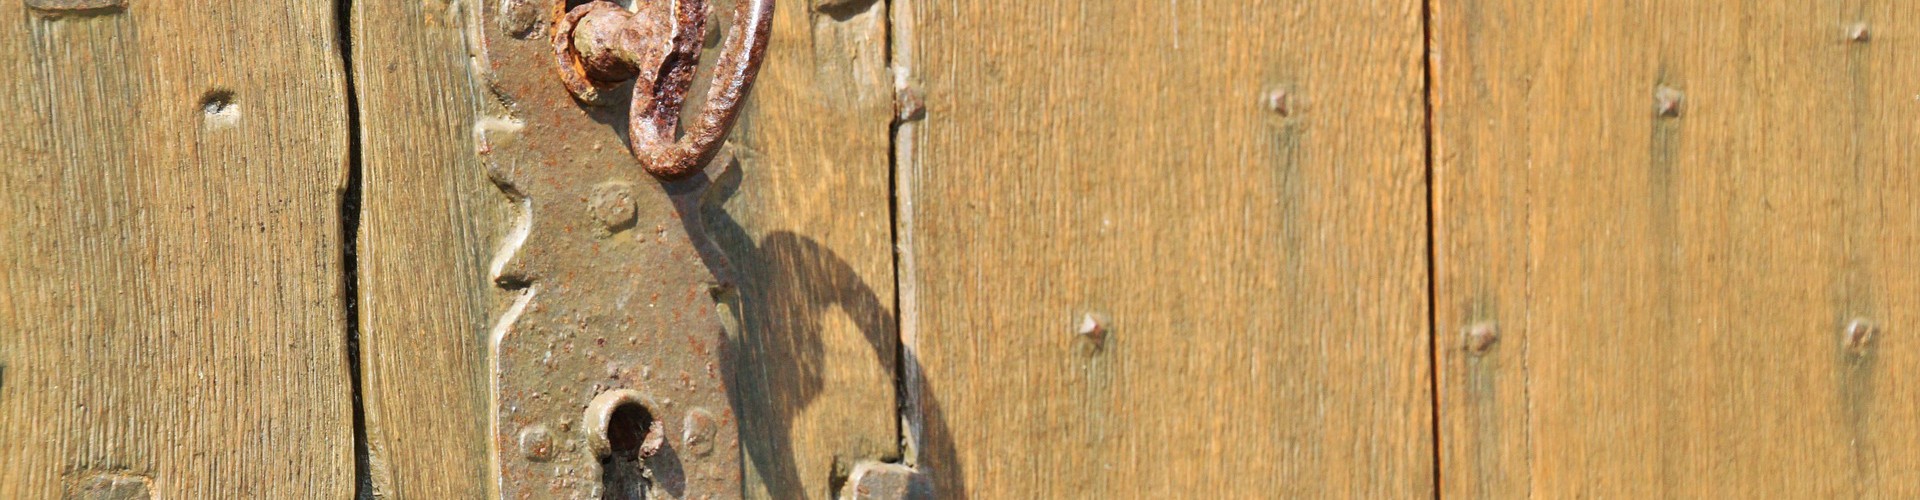 old doorlock with key